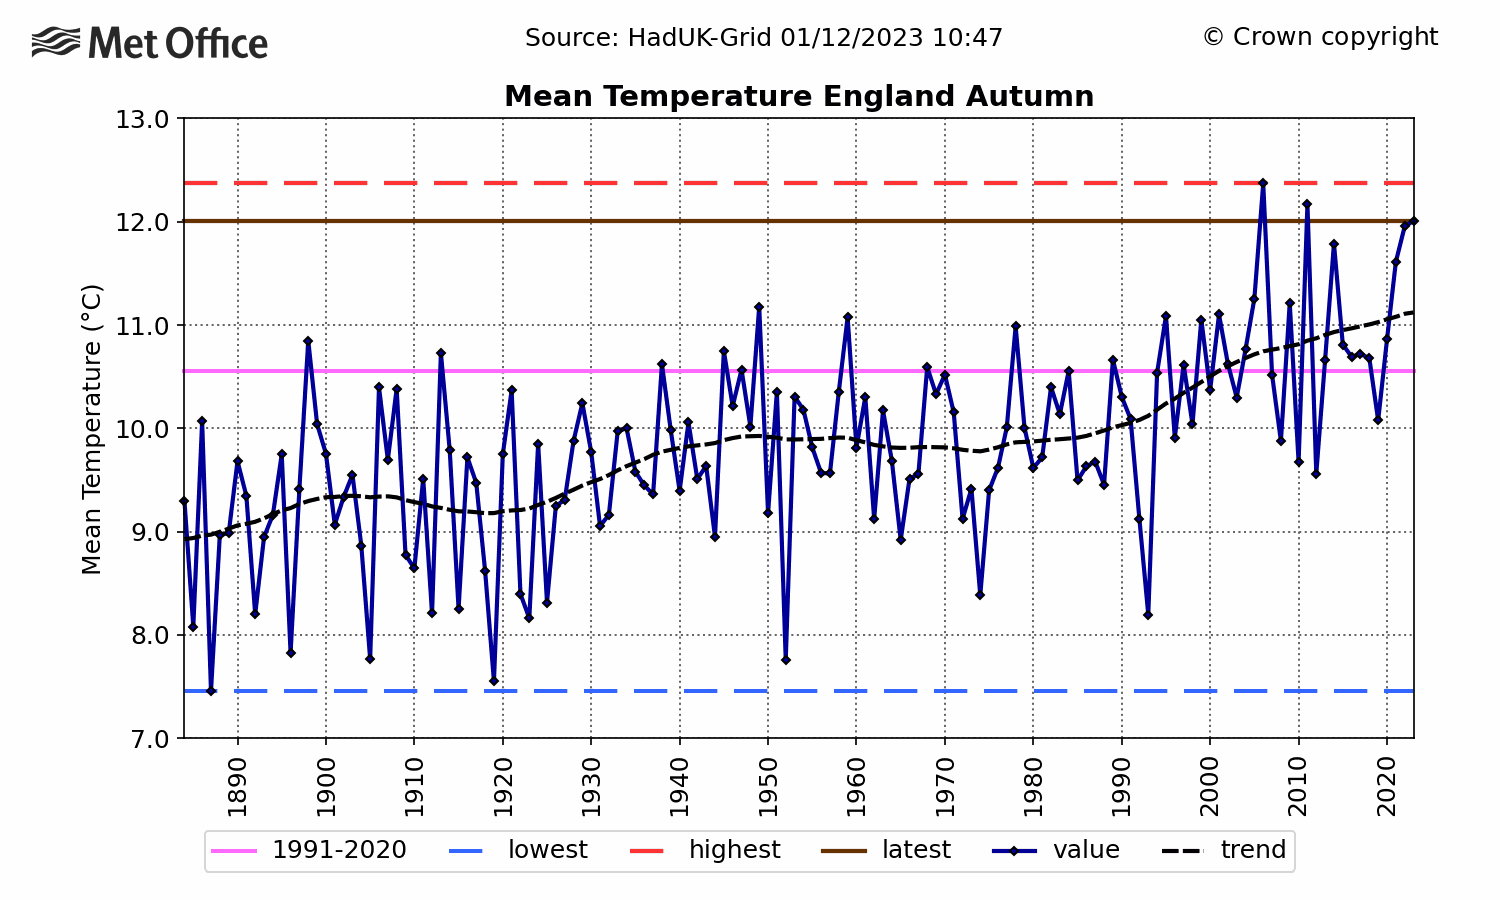 England Mean temperature - Autumn